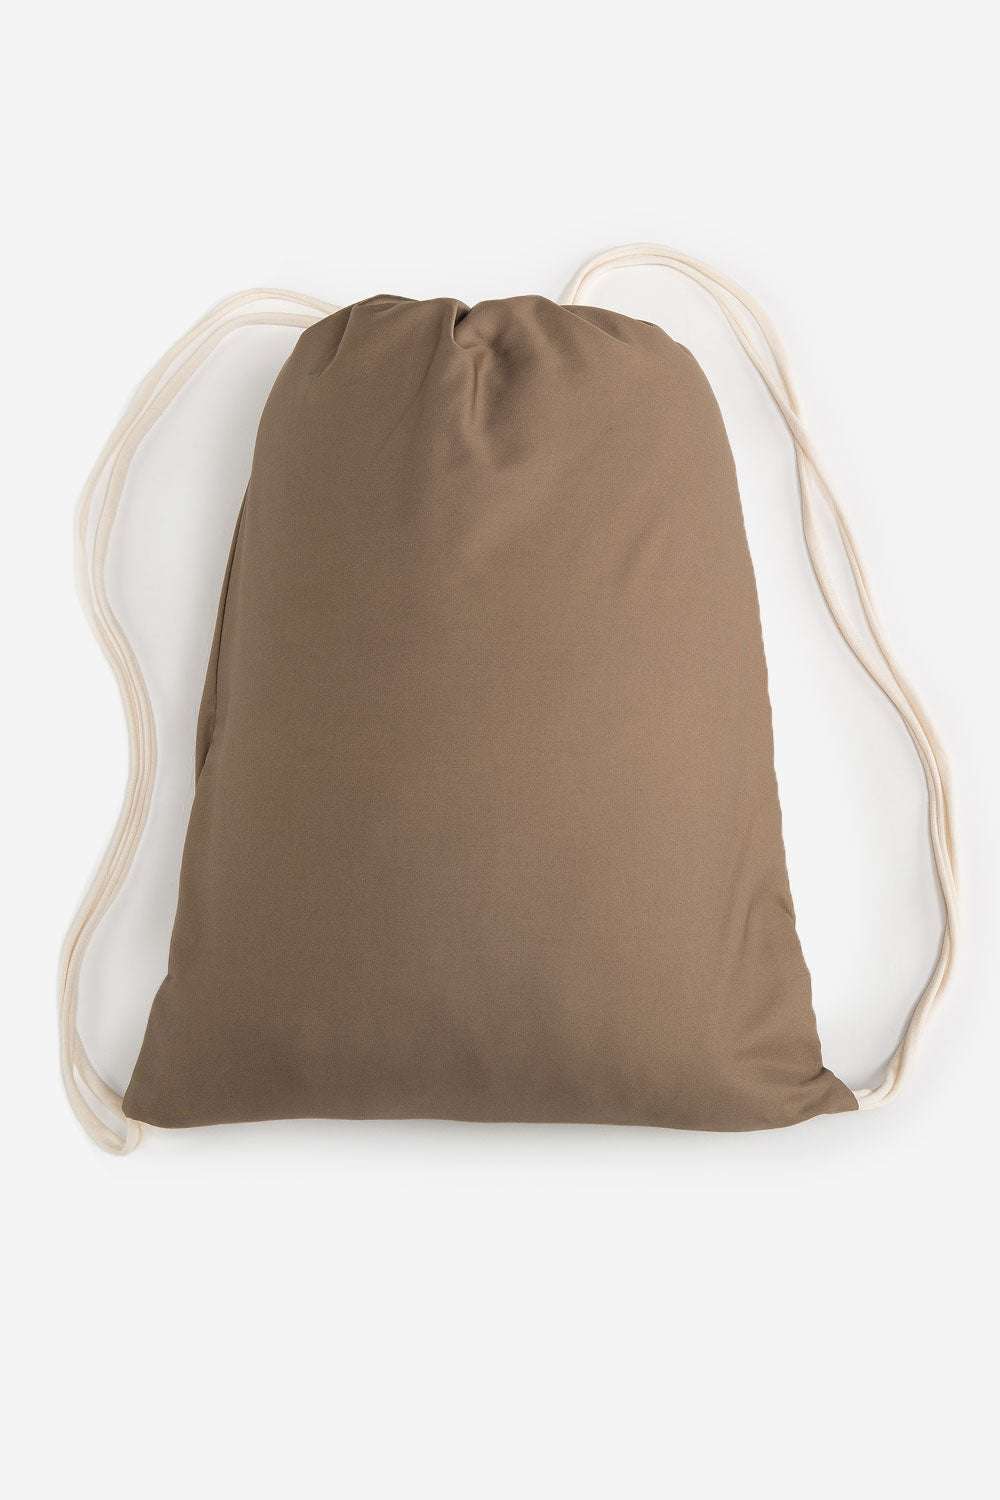 Travel cushion VARIO - 30 x 40-60cm